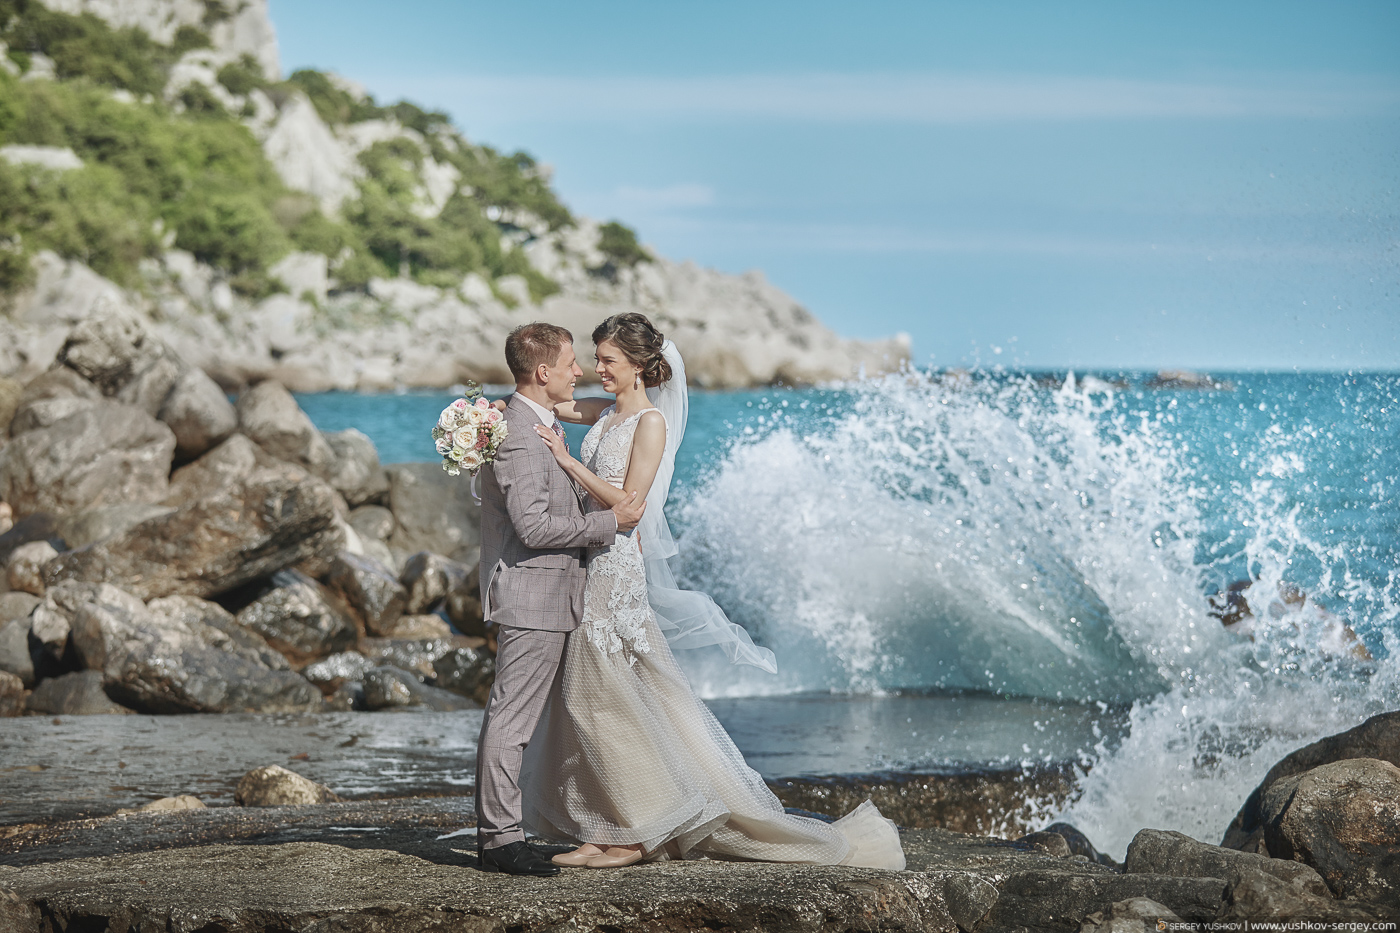 Красивая свадьба у моря в Крыму. Профессиональный фотограф - Сергей Юшков.